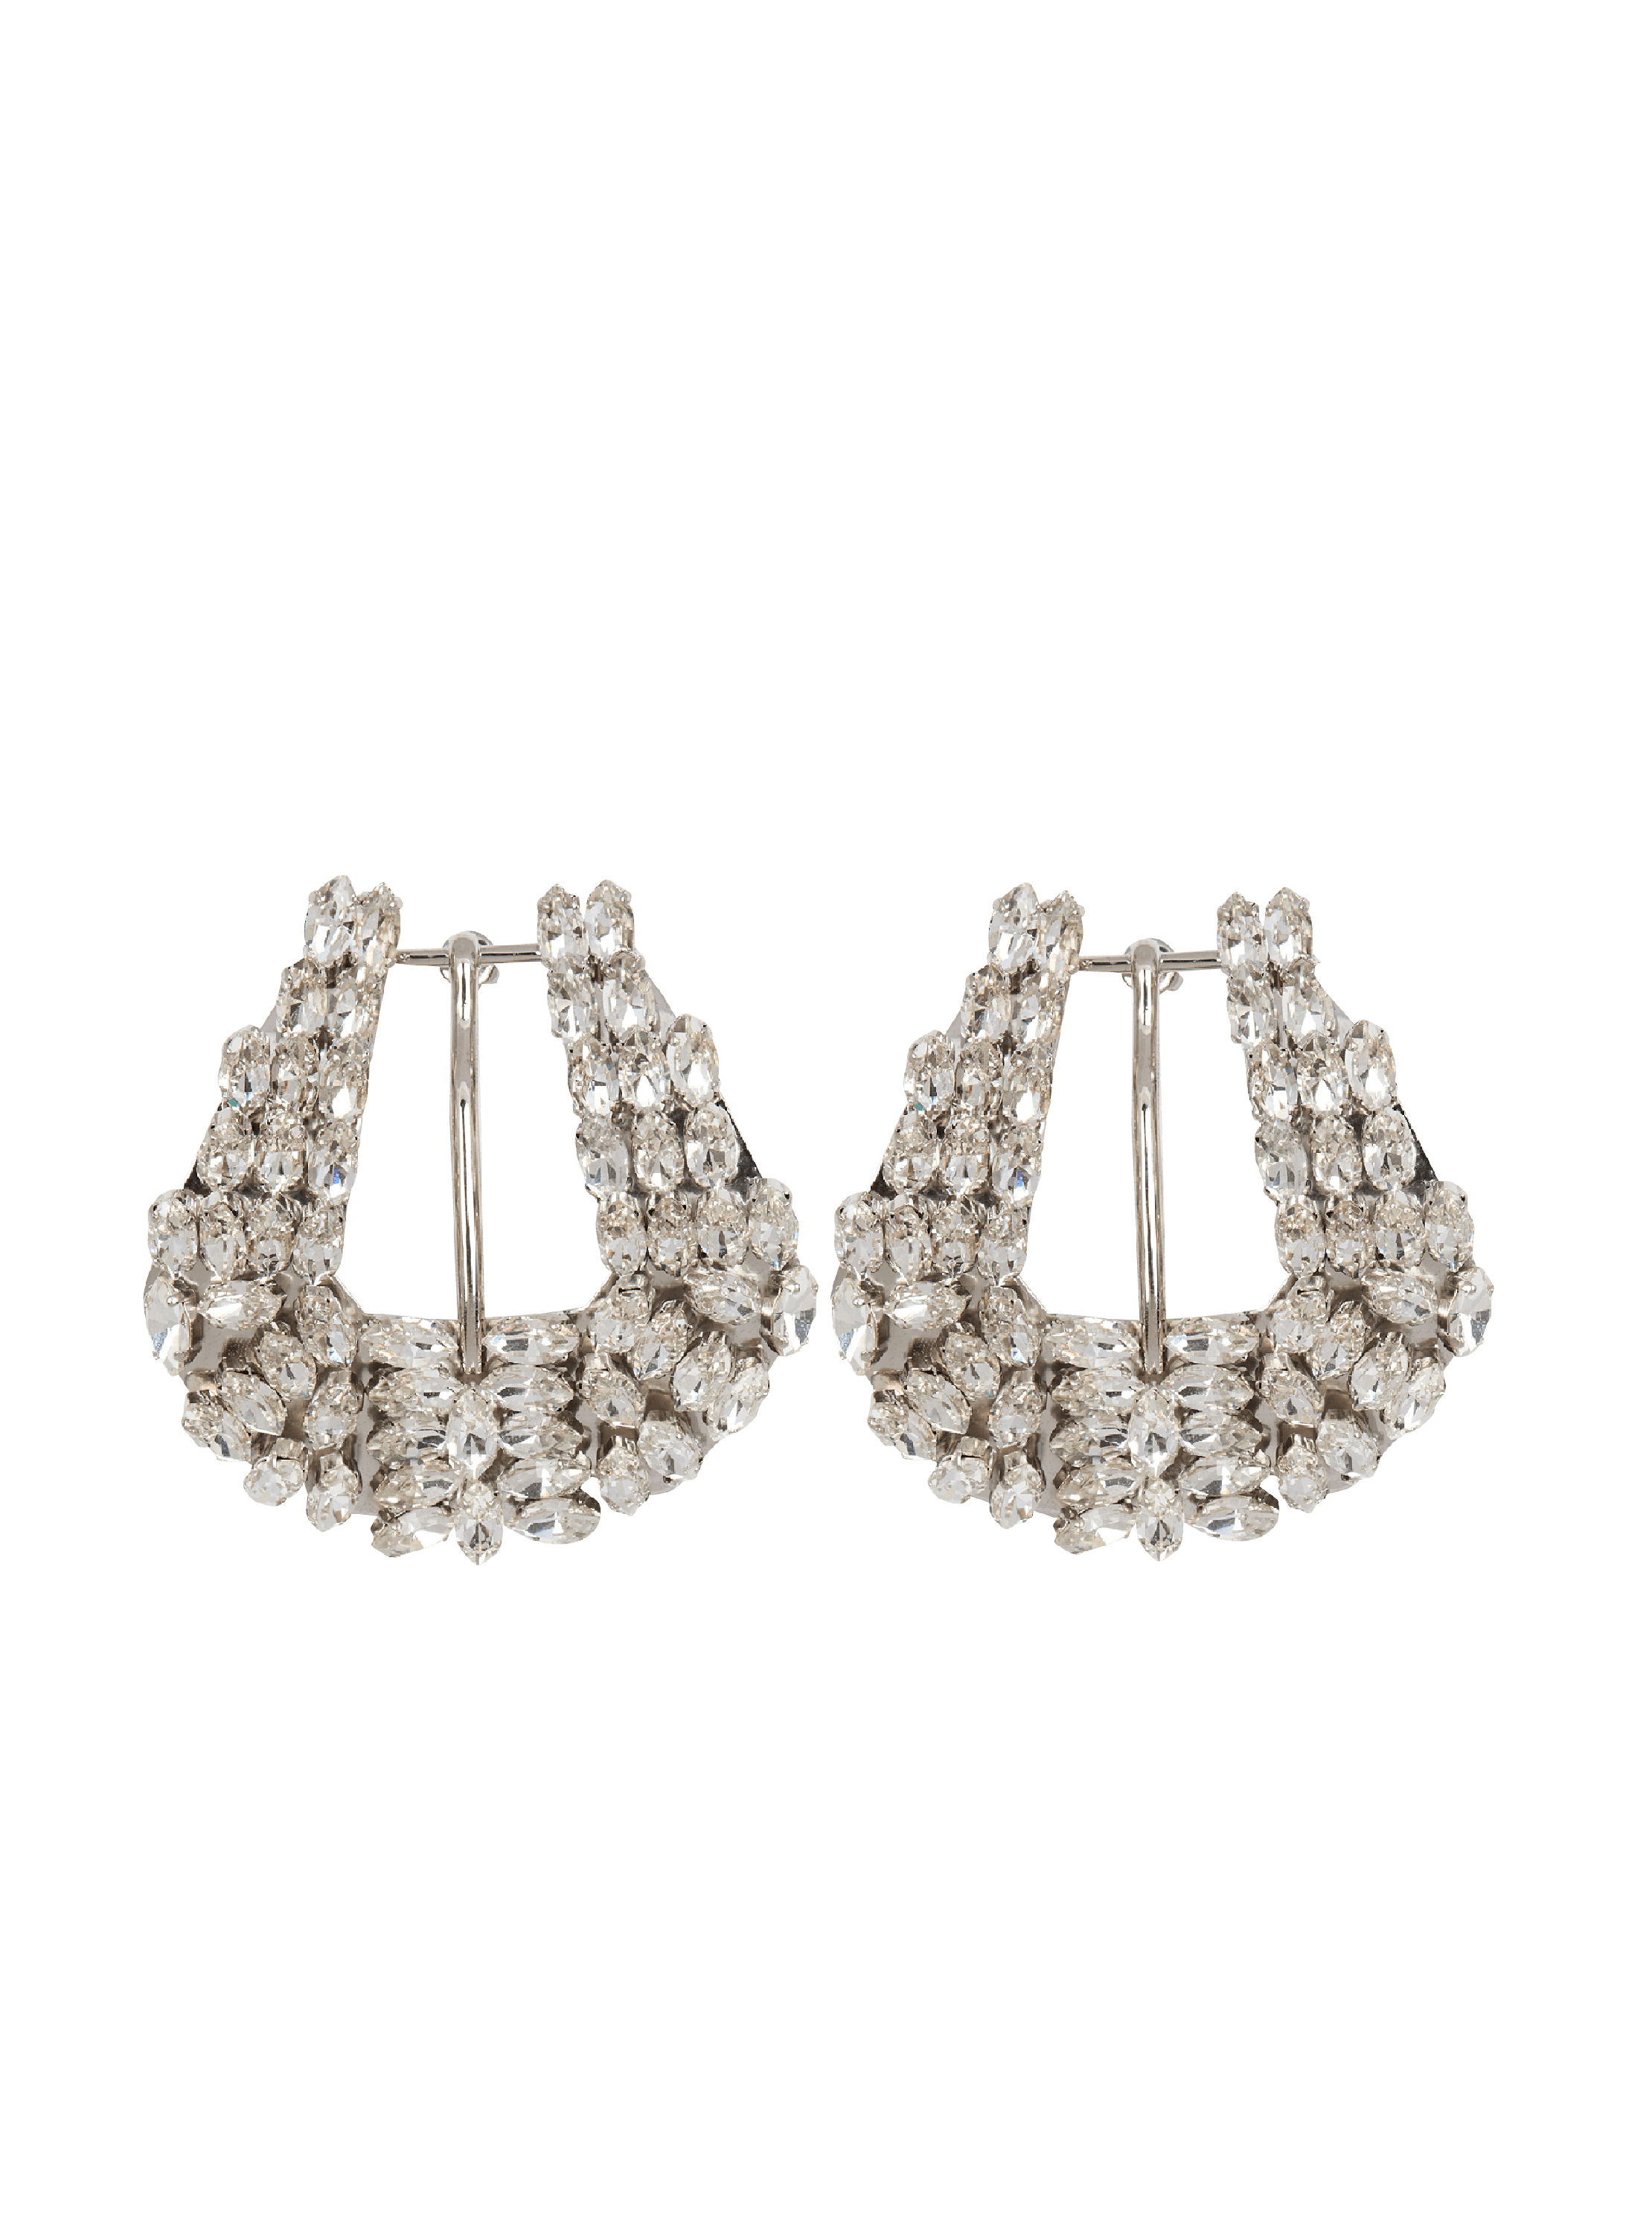 Western crystal earrings